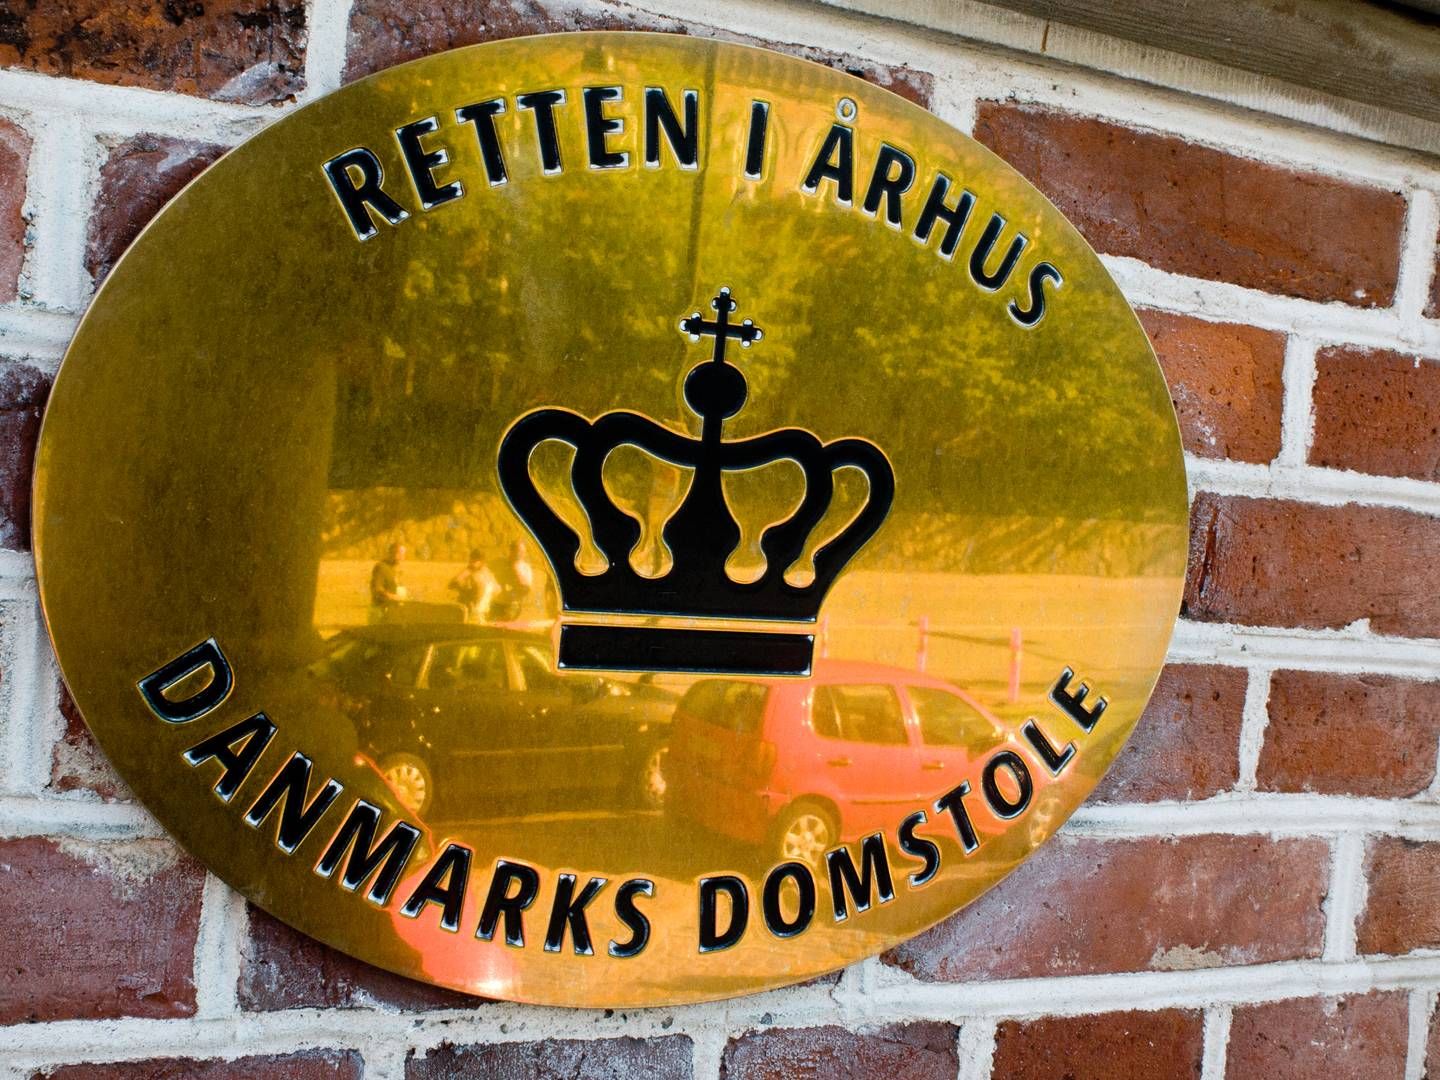 Aarhusianske retssager sendes til Herning og Holstebro. | Foto: Cathrine Kjærø Ulf Ertmann/JPA